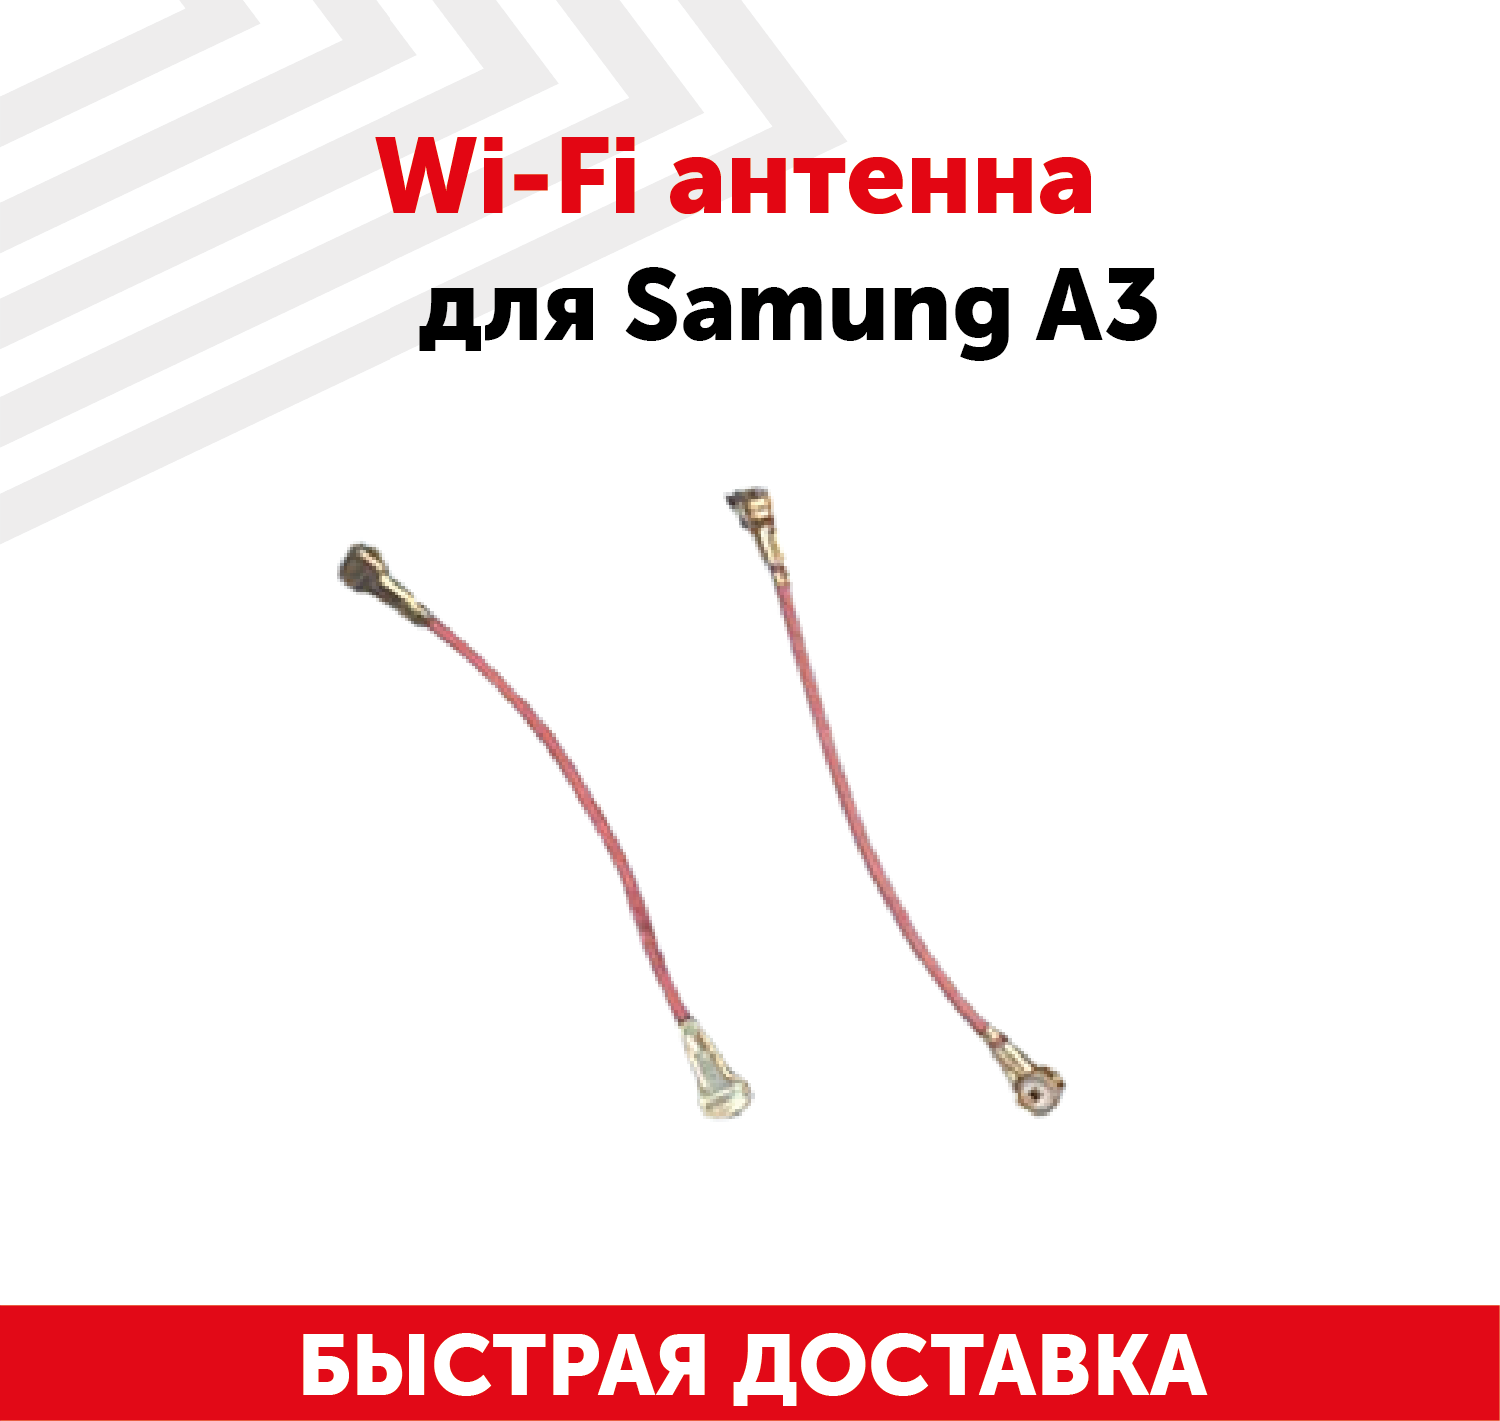 Wi-Fi антенна для мобильного телефона (смартфона) Samung Galaxy A3